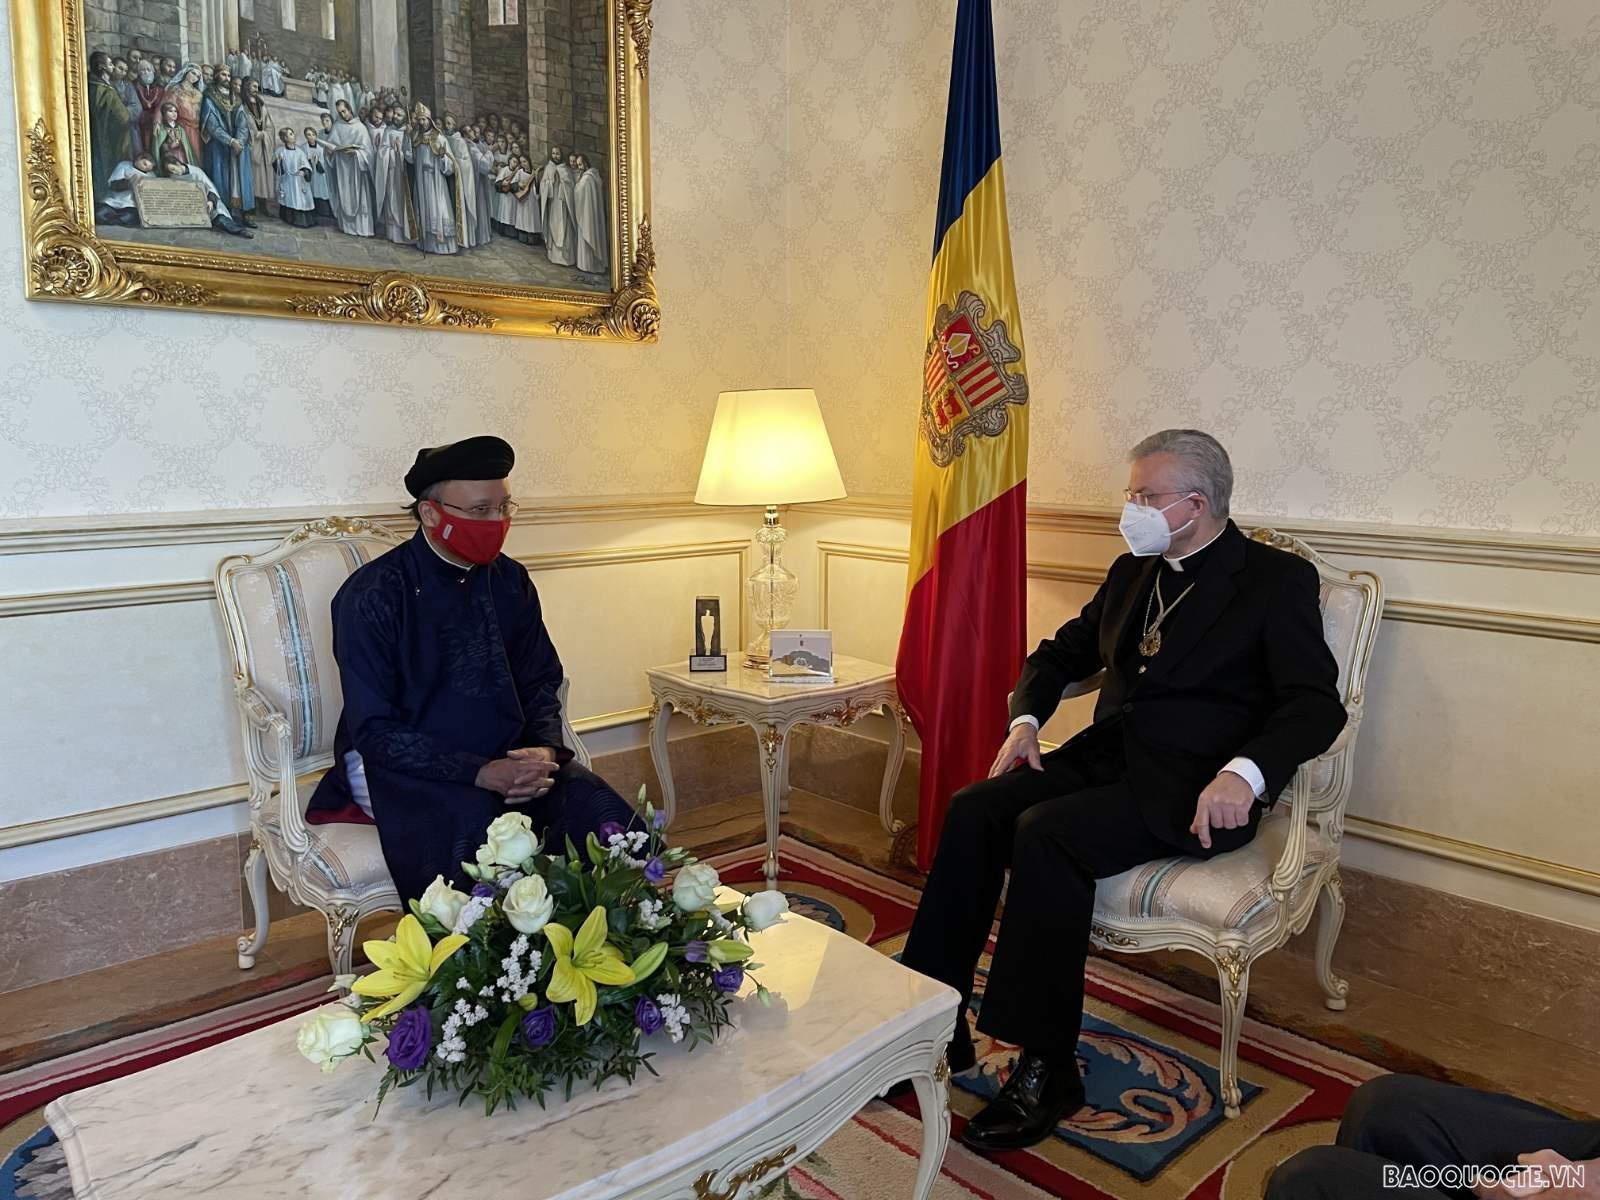 Đồng Quốc vương Công quốc Andorra đã tiếp Đại sứ Đinh Toàn Thắng